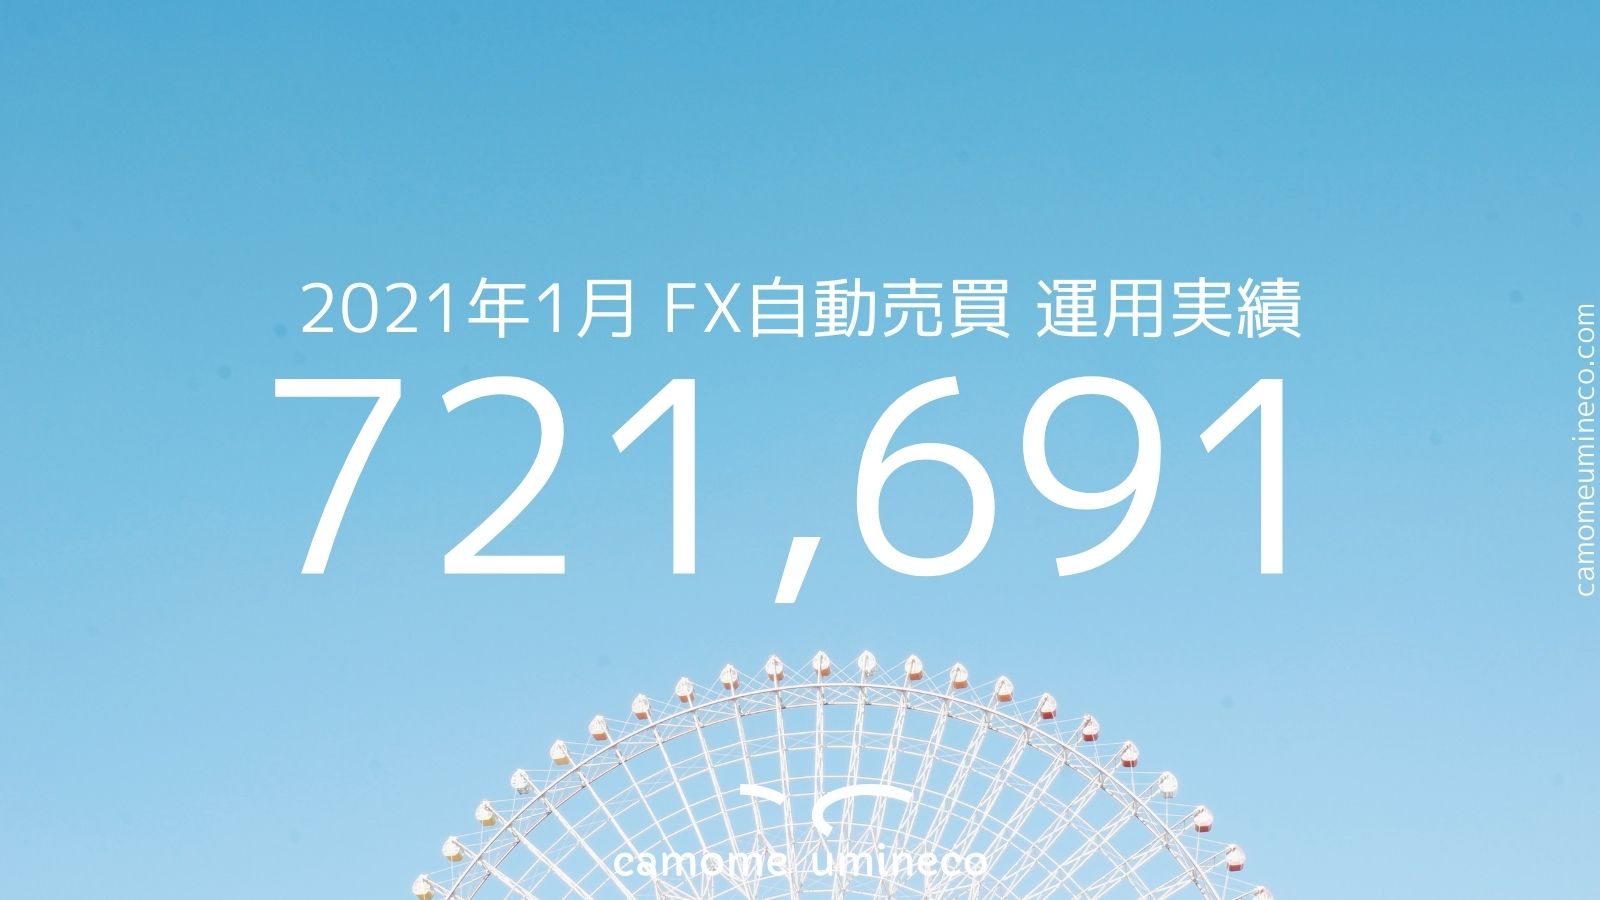 【トライオートFX】2021年1月 運用実績 721,691円